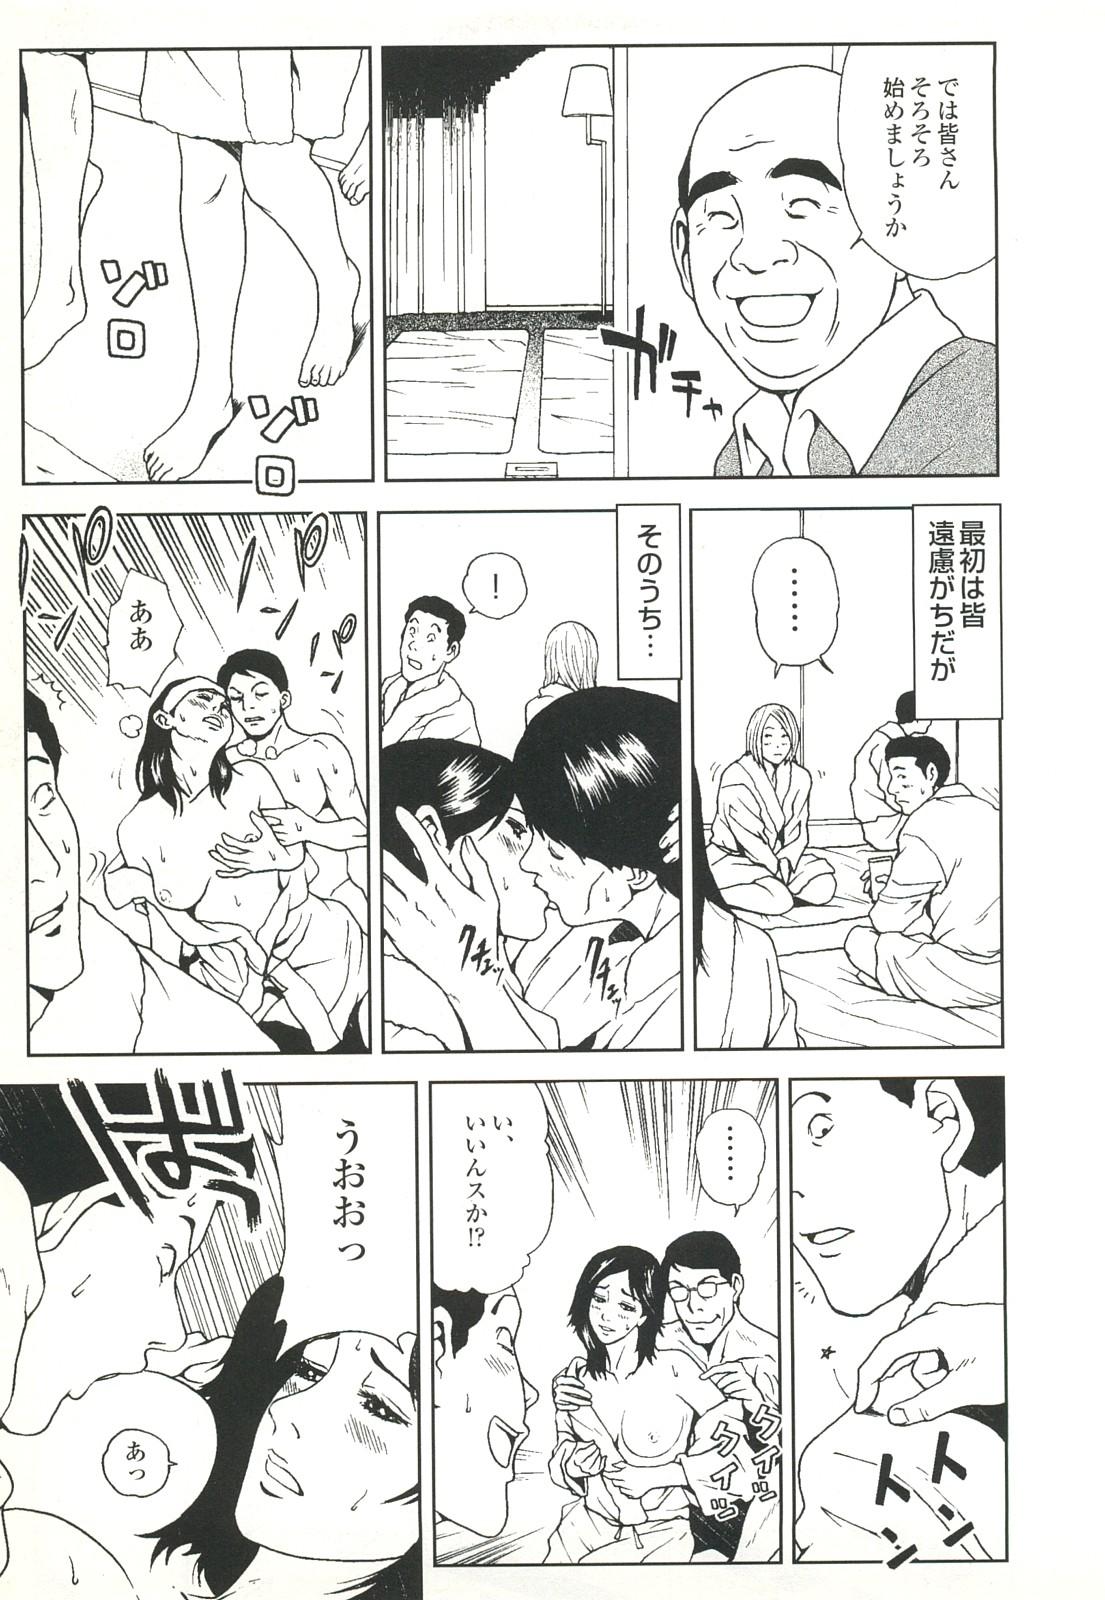 コミック裏モノJAPAN Vol.18 今井のりたつスペシャル号 60